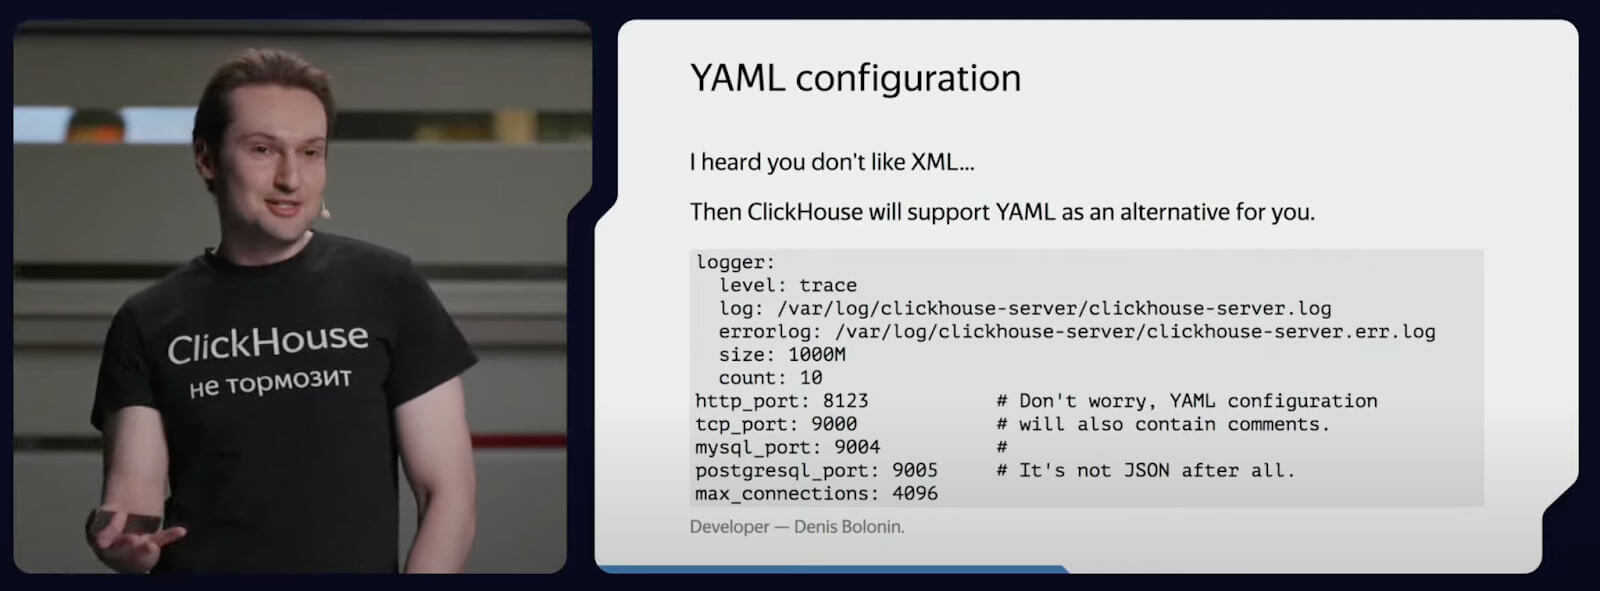 yaml-configuration.jpeg